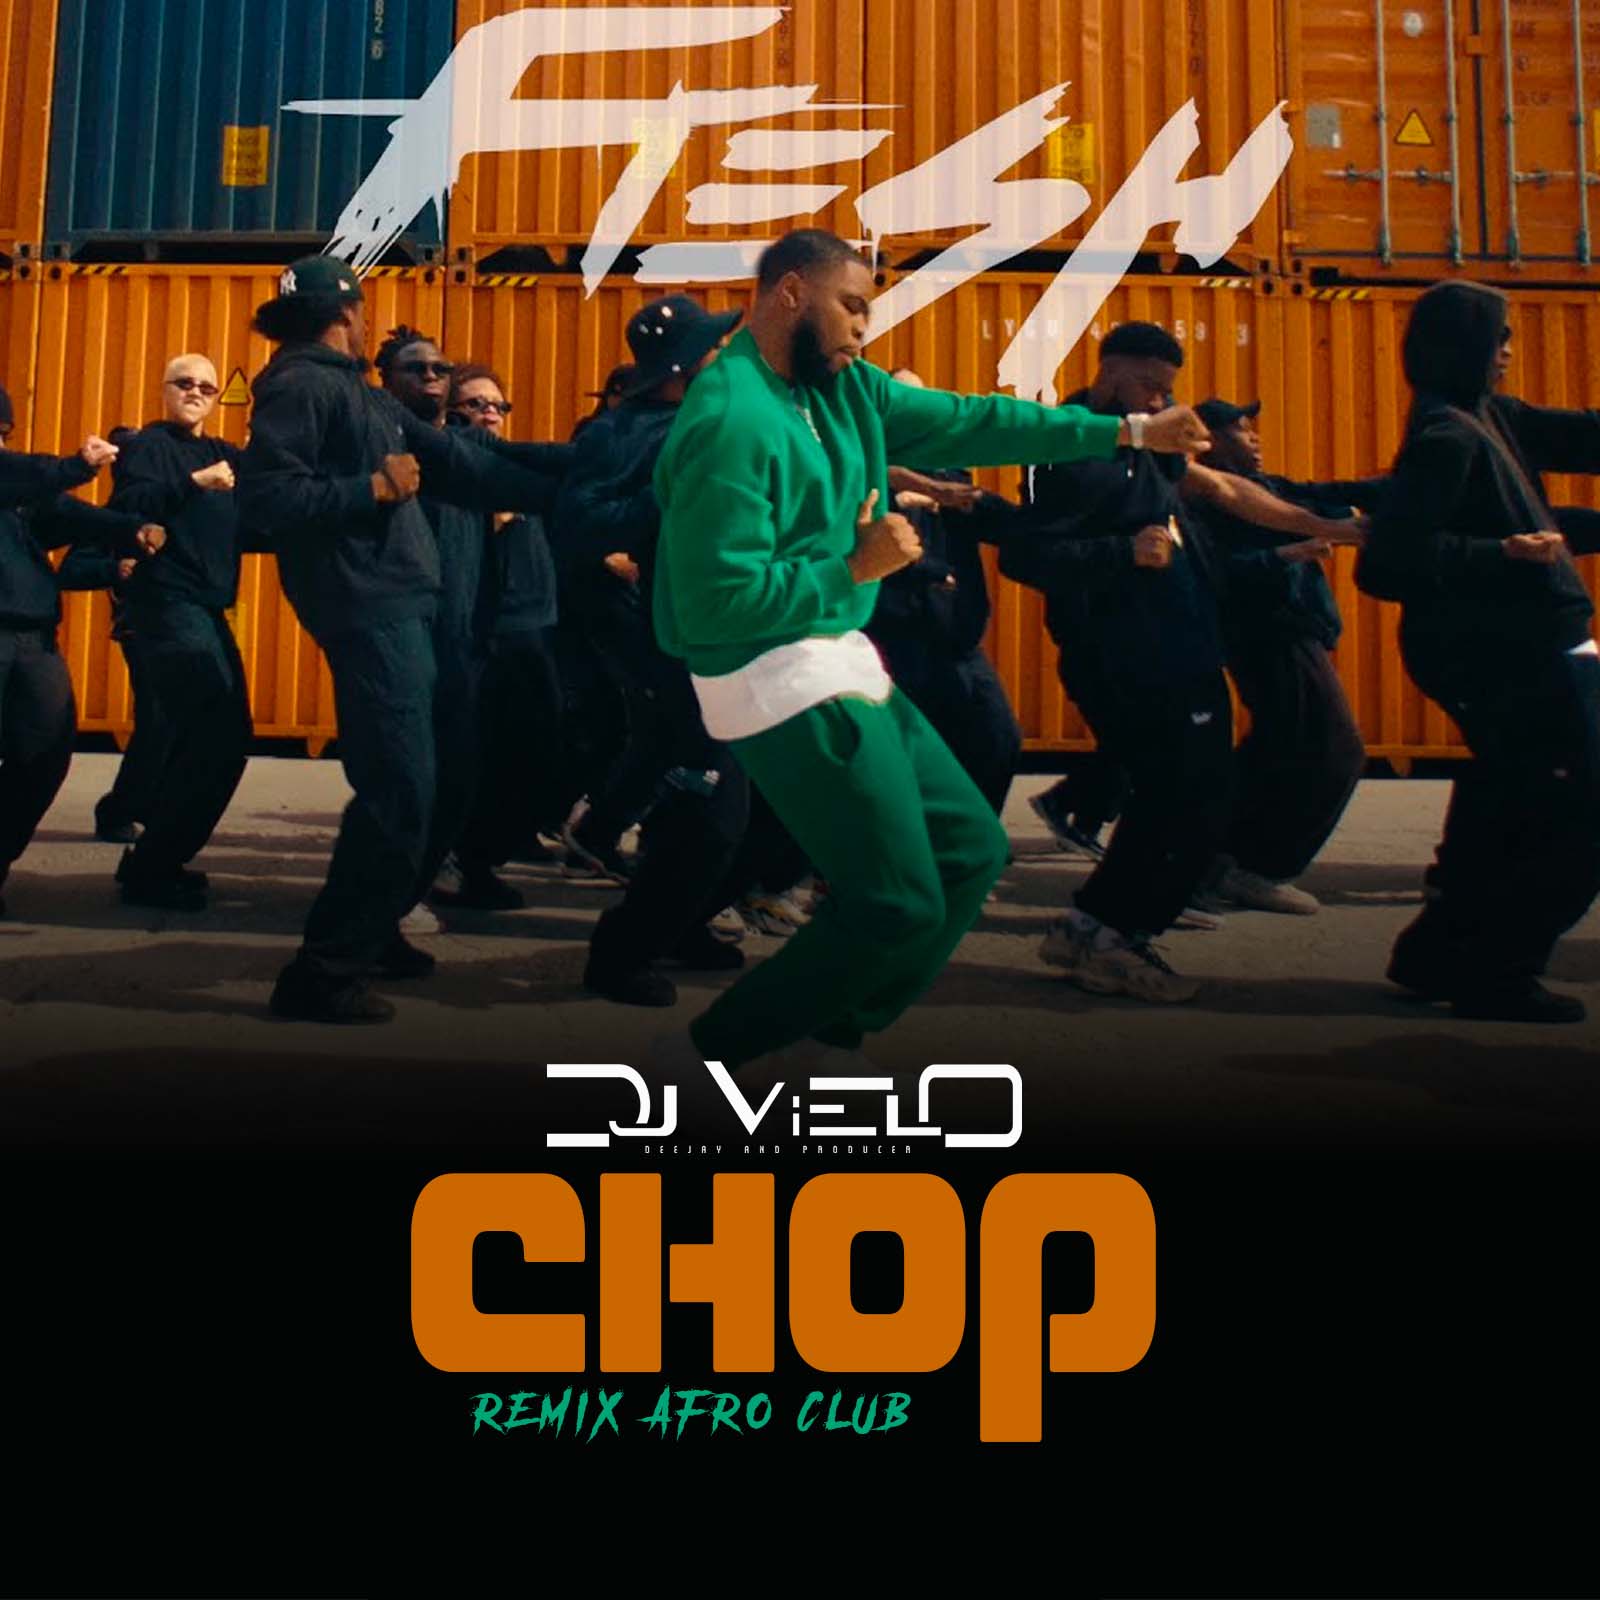 ਡਾਉਨਲੋਡ ਕਰੋ Dj Vielo X Fresh - Chop Remix Afro Club DISPO SUR SPOTIFY, DEEZER, APPLE MUSIC